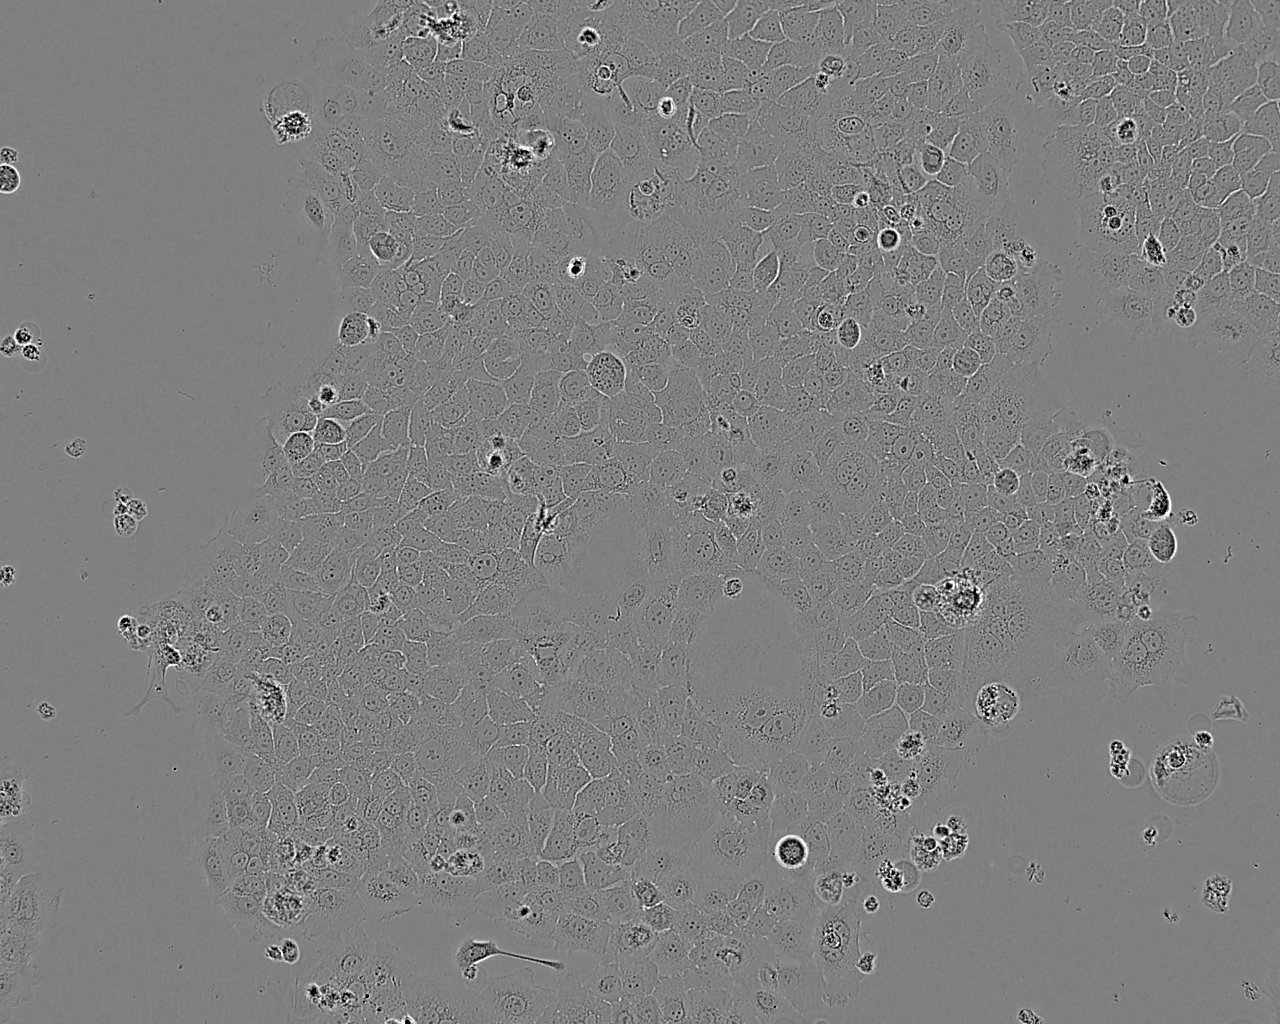 NCI-H3255 epithelioid cells人肺癌细胞系